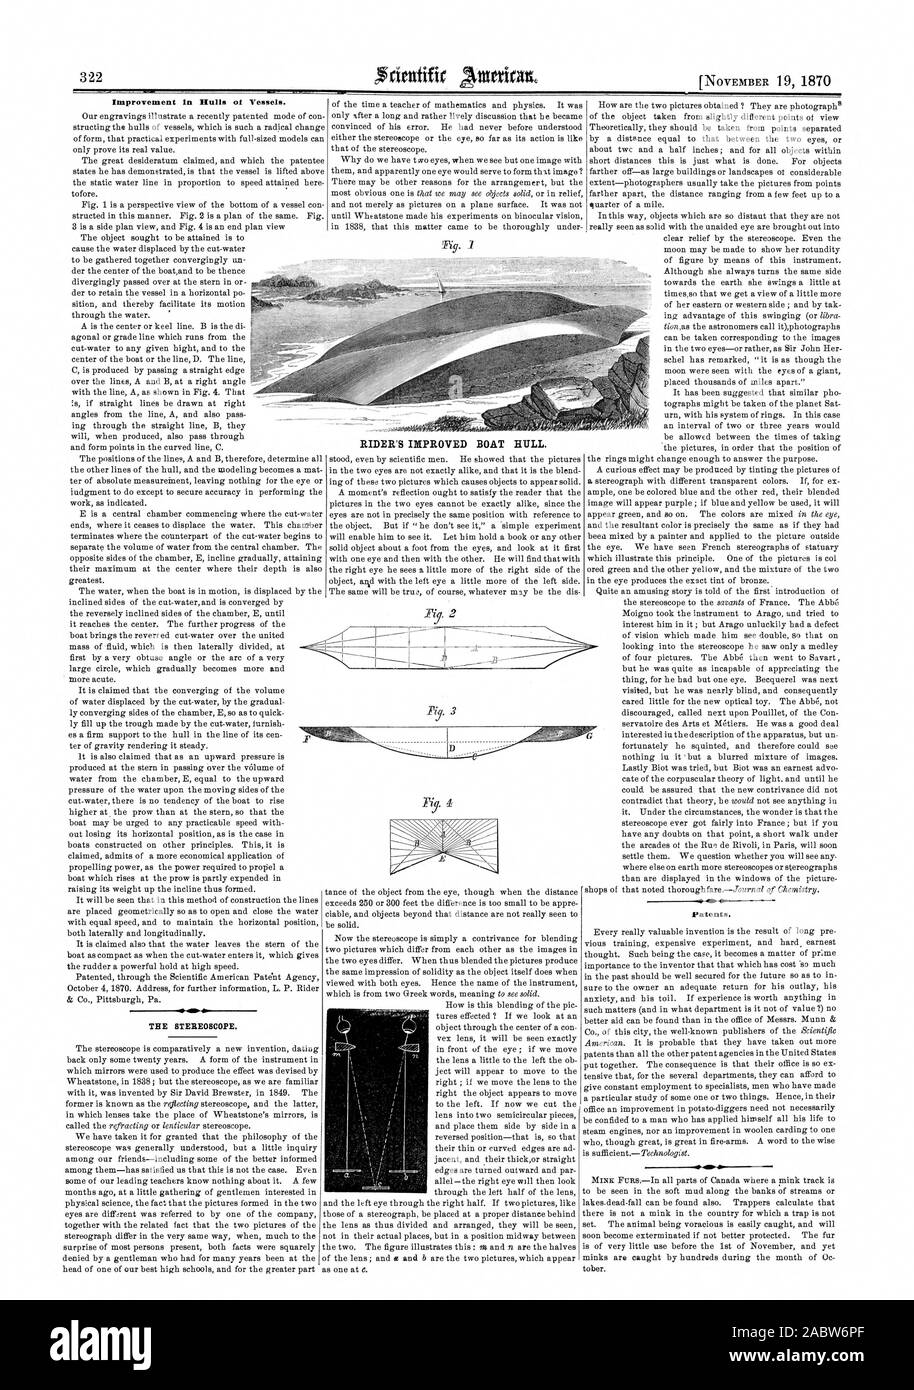 Amélioration de coques de navires ot. Le stéréoscope. Les brevets. Amélioration du RIDER coque de bateau. 1), Scientific American, 1870-11-19 Banque D'Images